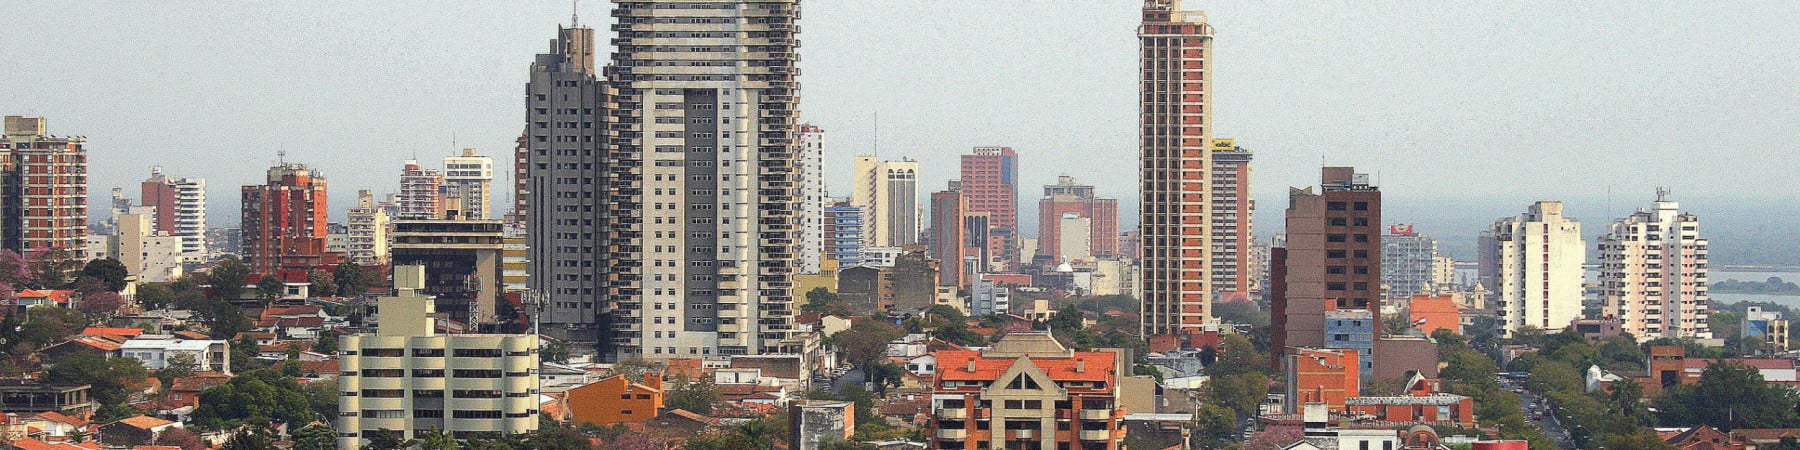 Asunción, Paraguay.